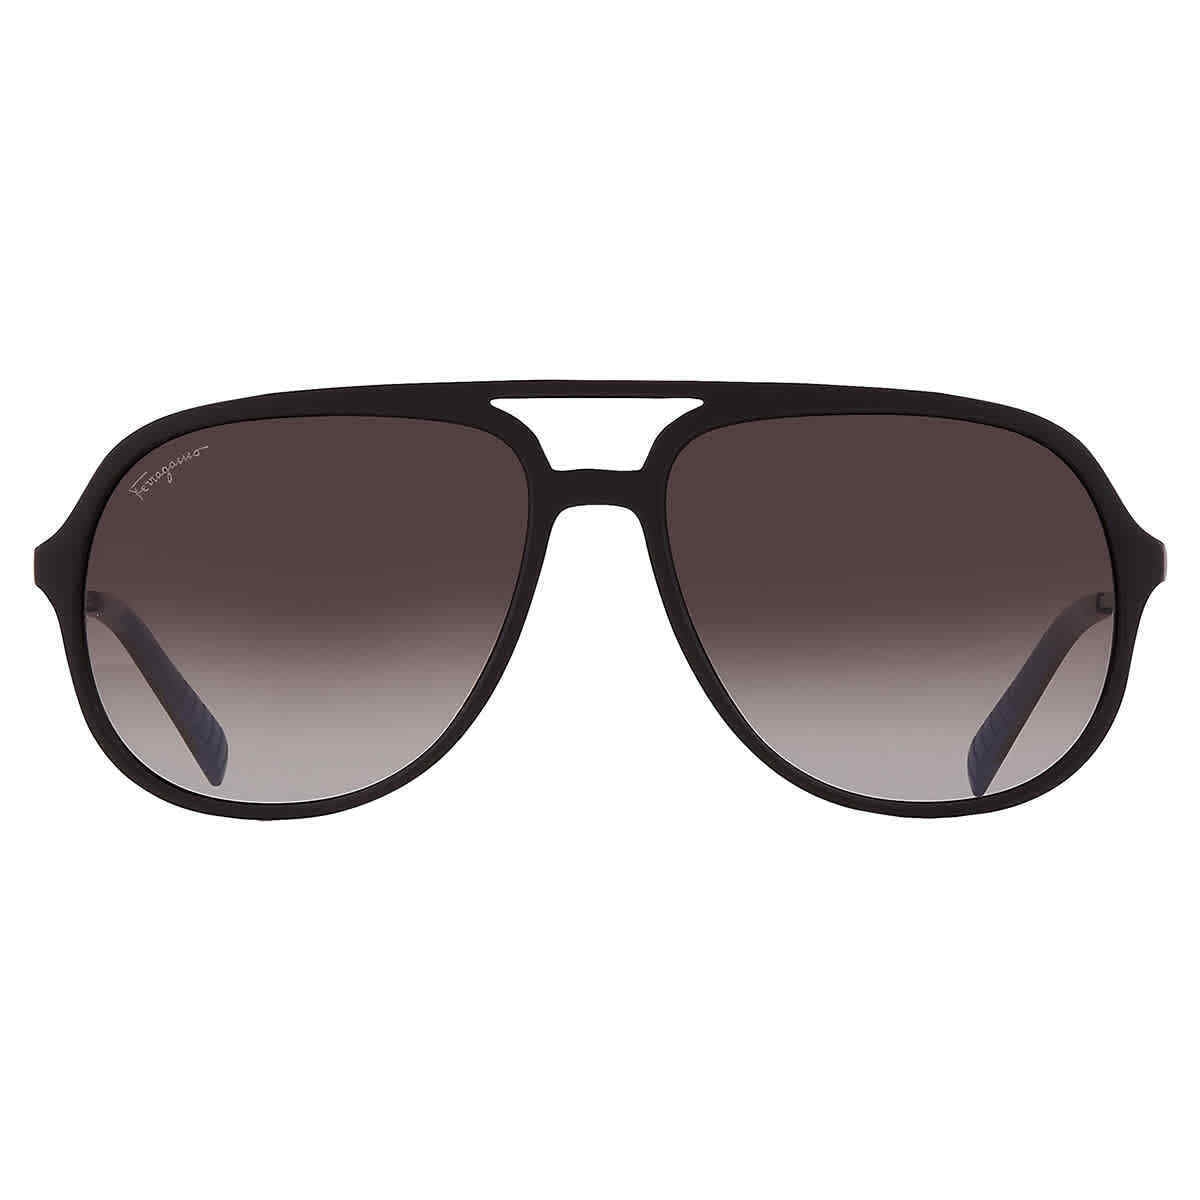 Salvatore Ferragamo SF 999S-002 60mm New Sunglasses